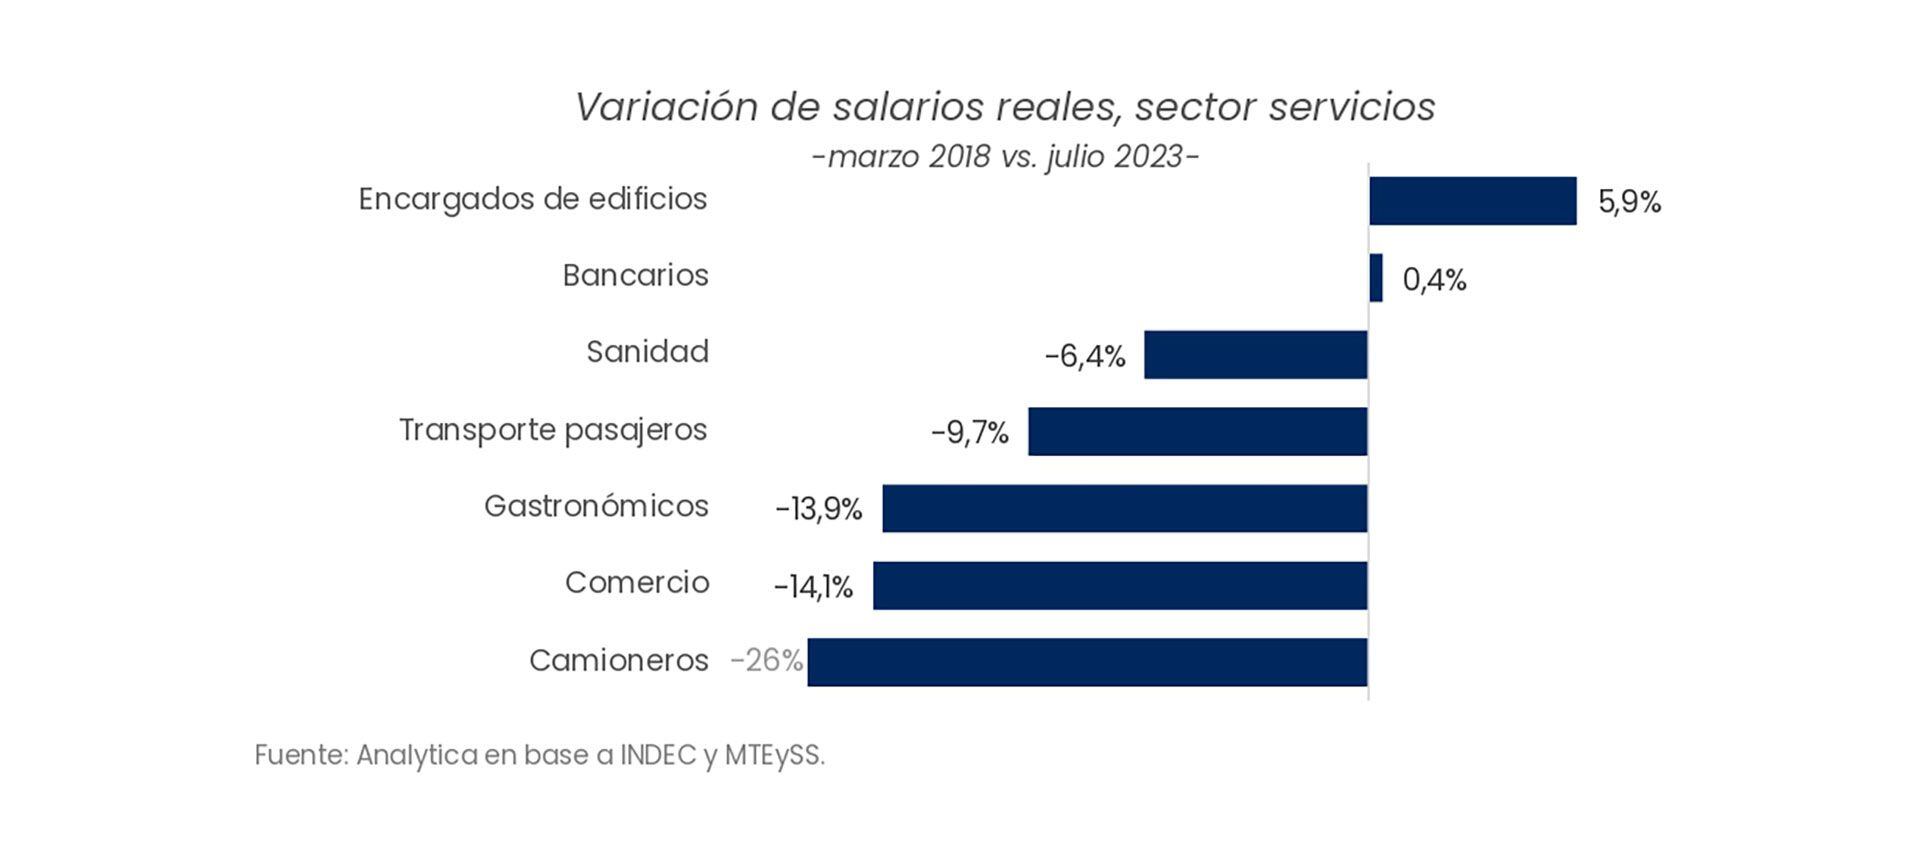 Variación salarial en el sector servicios
Analytica

